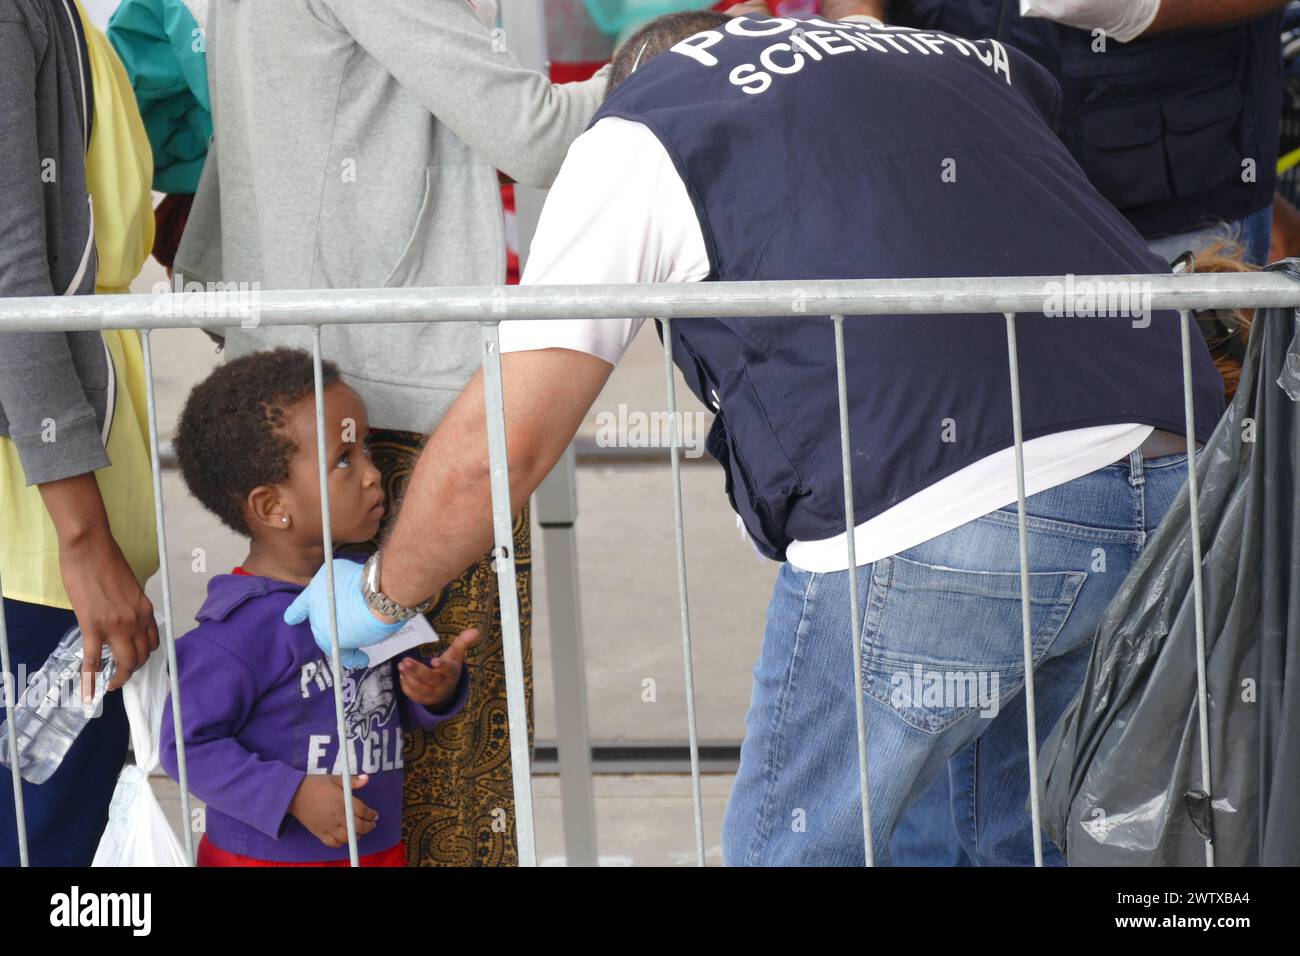 Ein unbegleitetes Kind wird von sizilianischen Behörden begrüßt, nachdem es am 12. Juli 2016 von einem humanitären Schiff im Mittelmeer gerettet wurde. Stockfoto